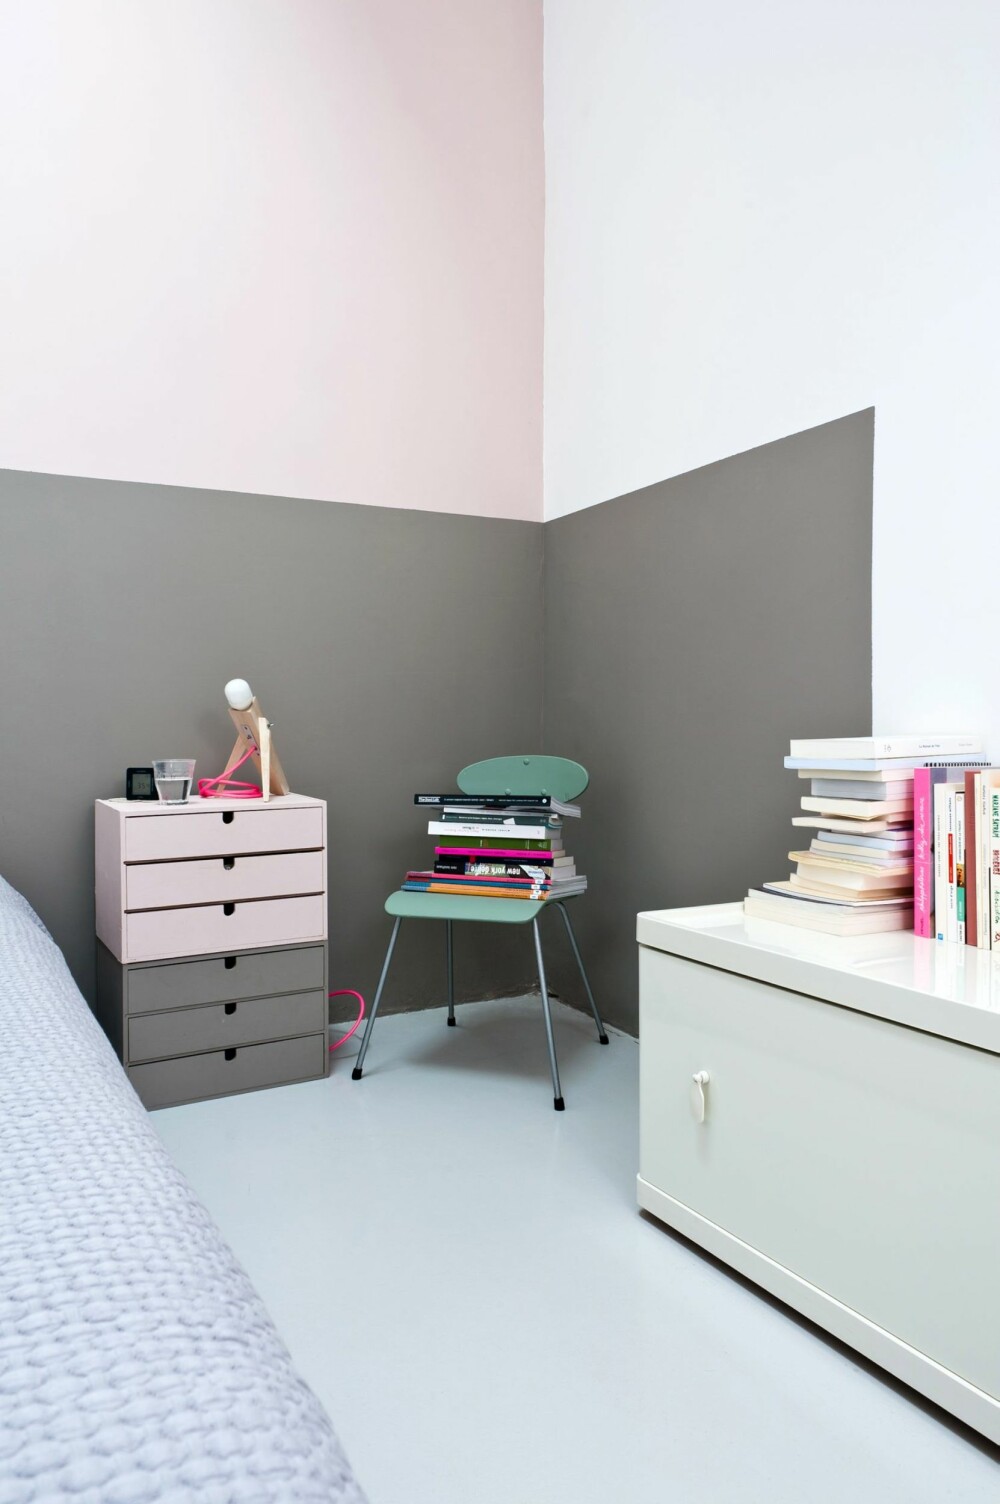 MOTSATT PÅ VEGG OG MØBEL: Soverommet er malt i grått og rosa, noe som gir et mykt og feminint inntrykk. Ved å male et farget felt bak sengen skaper Caroline en illusjon av et sengegjerde.